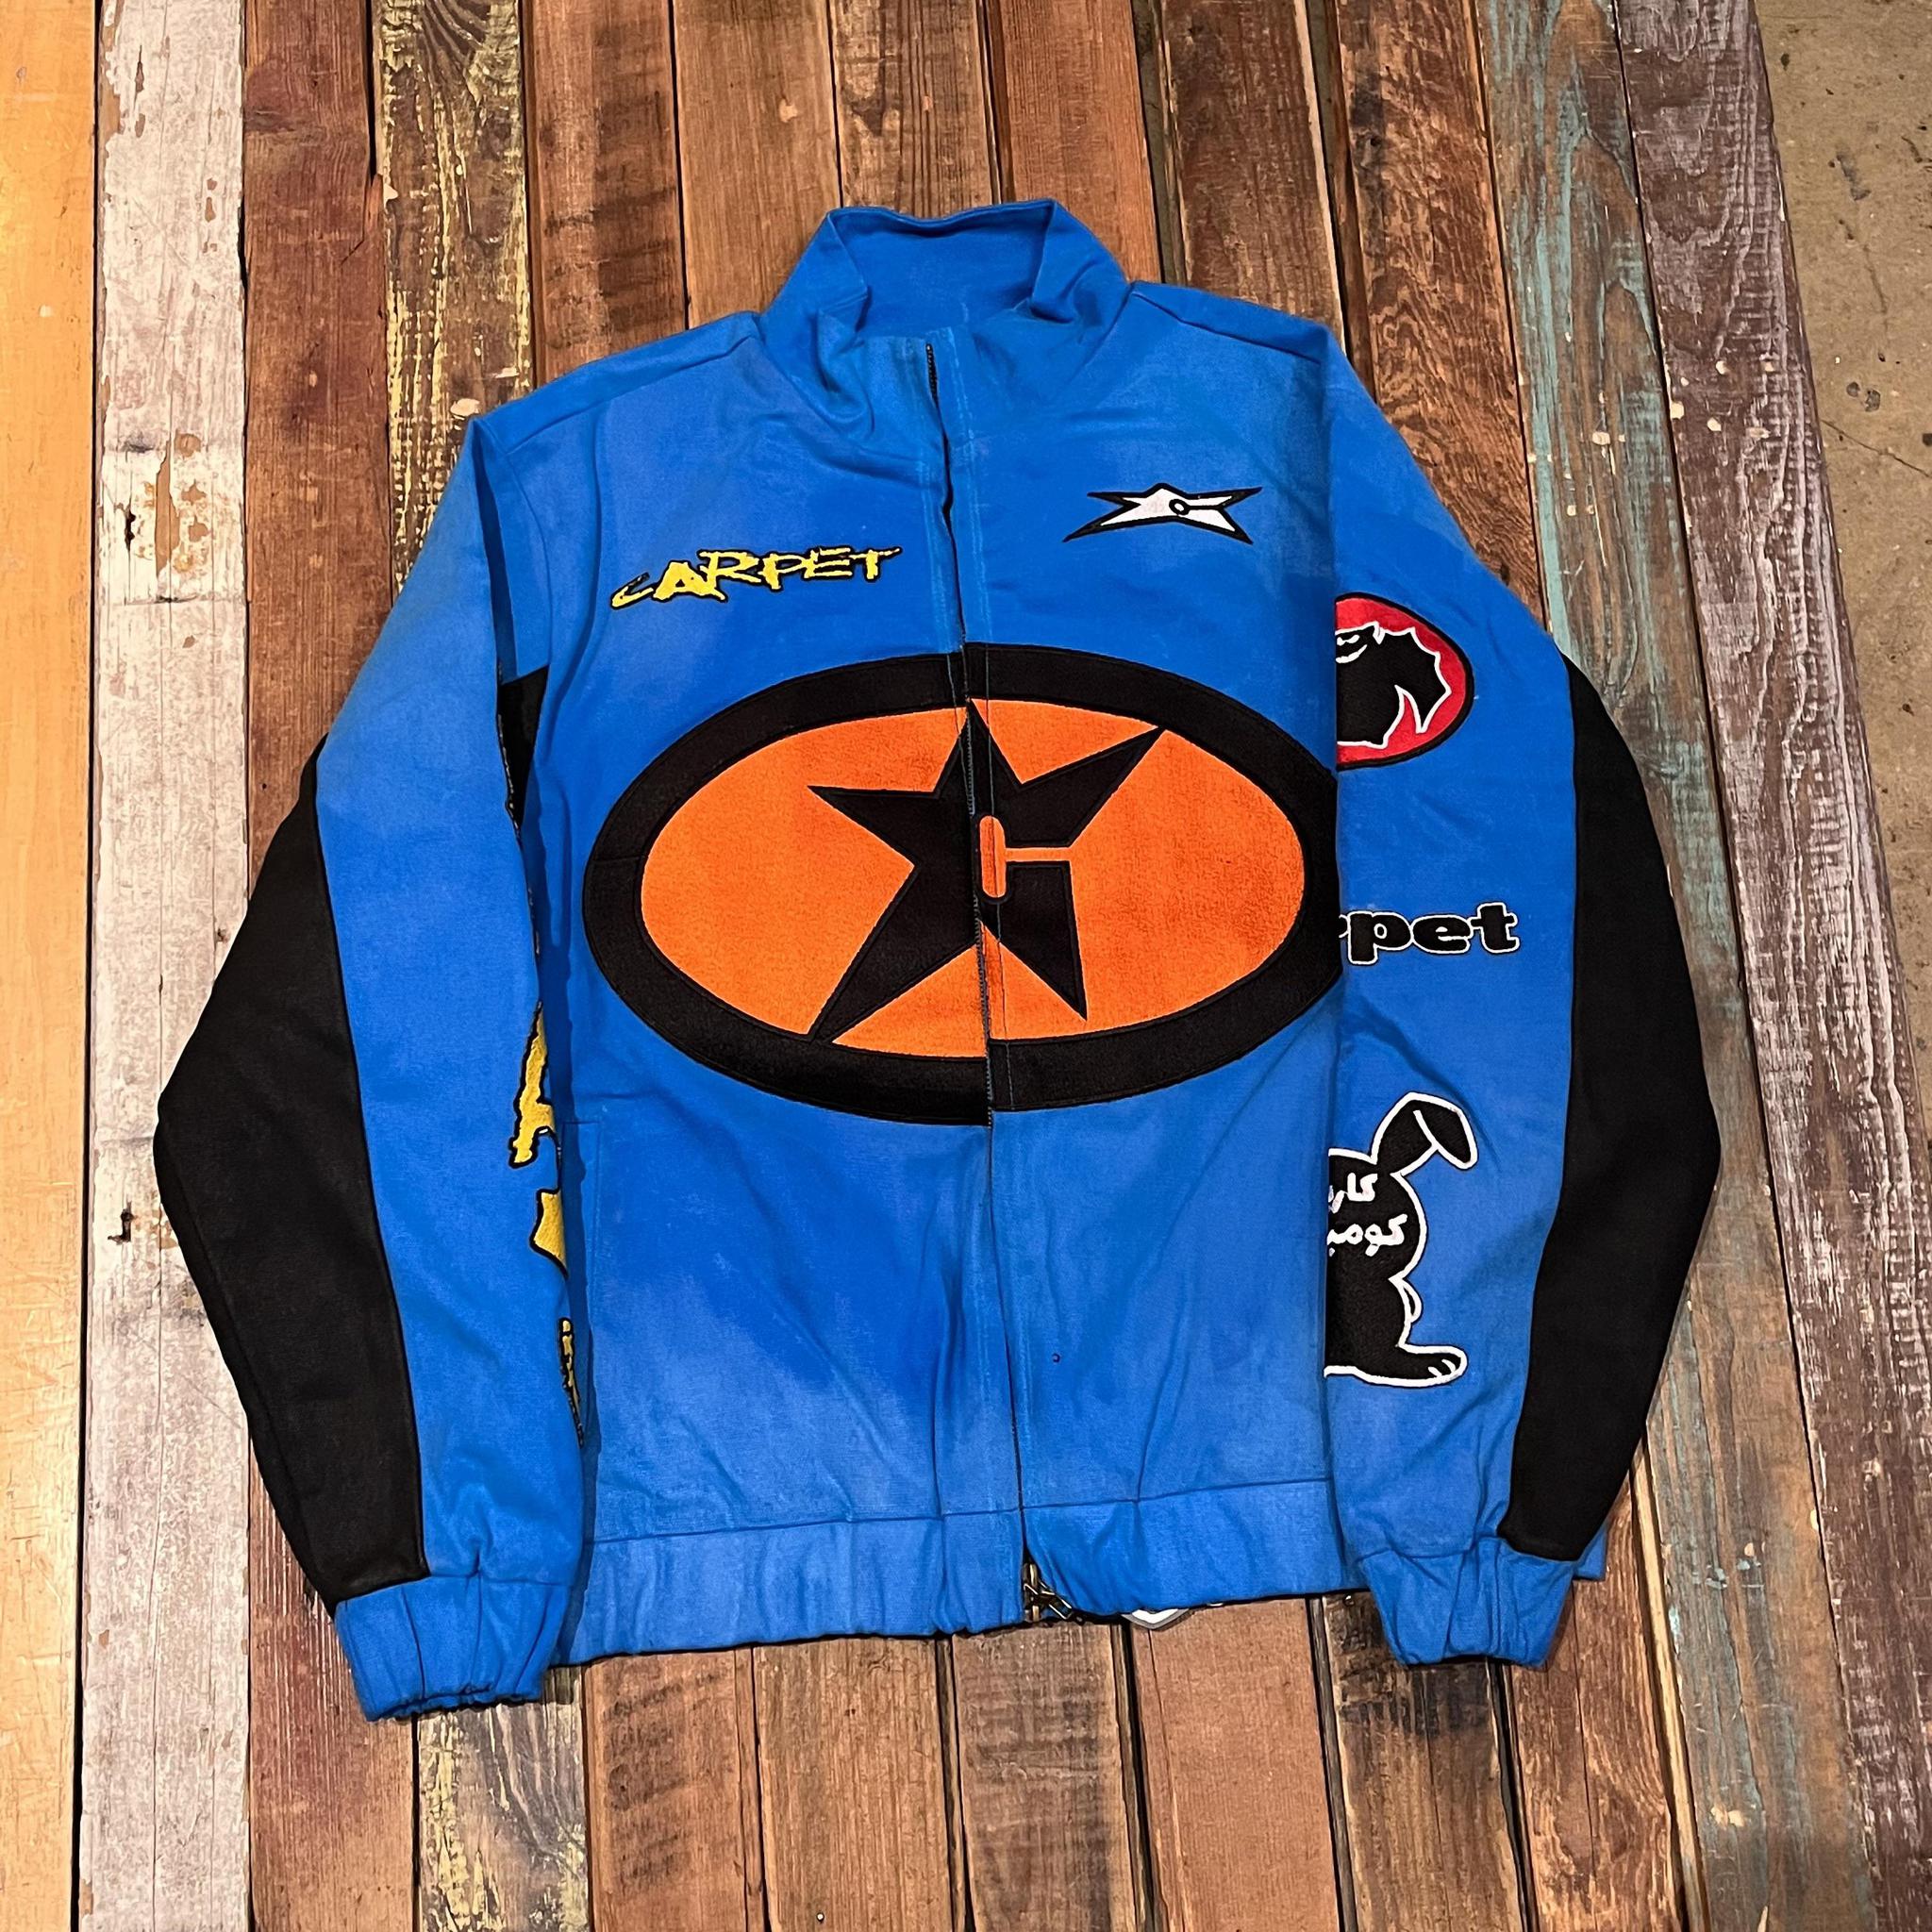 Carpet Company Racing Jacket – humidity